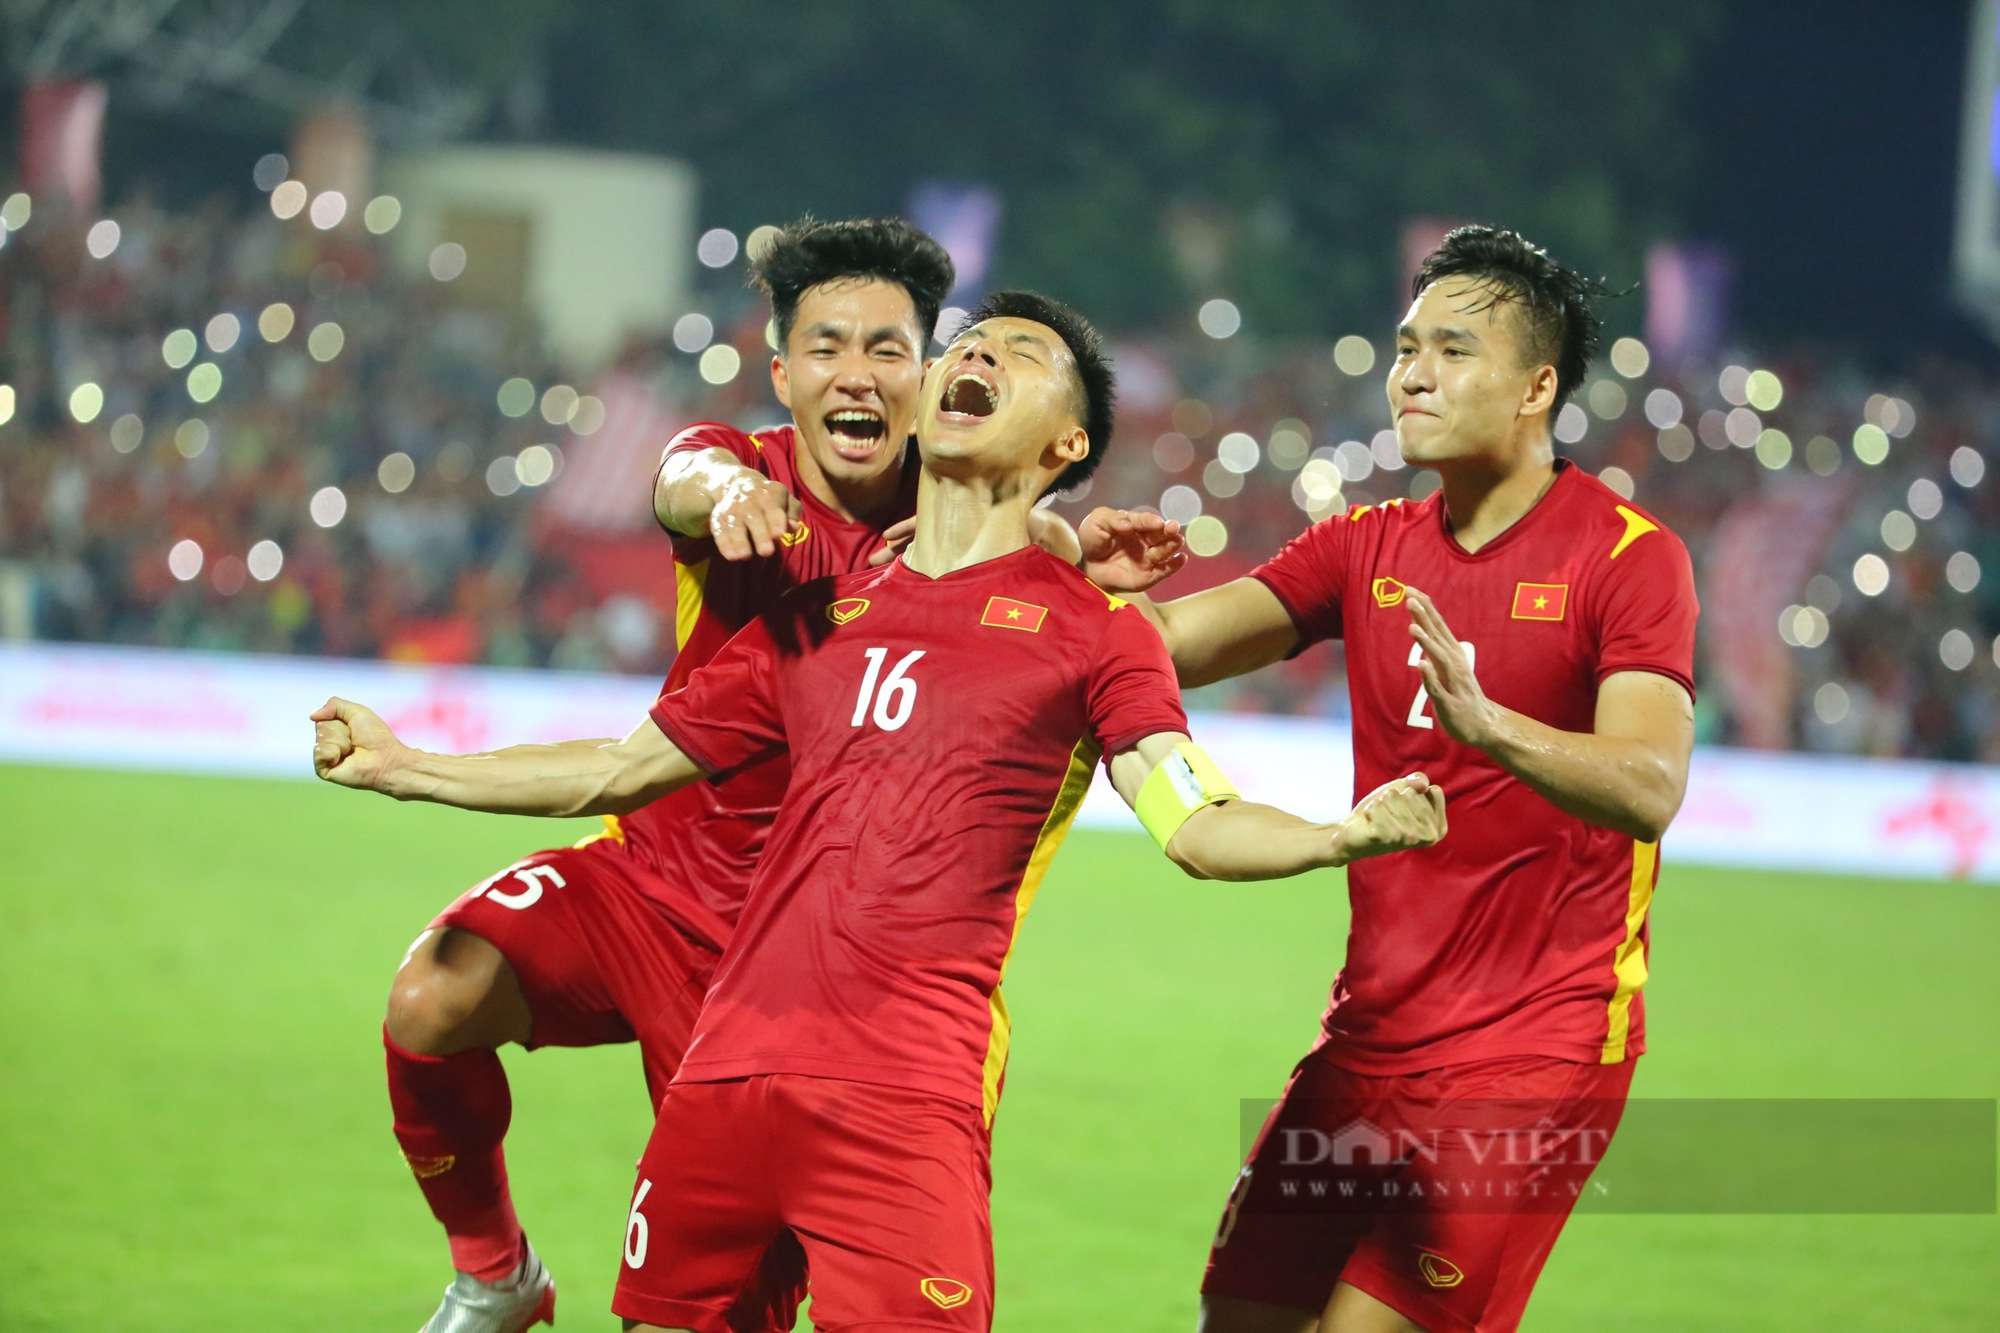 HLV Park Hang-seo ăn mừng cùng U23 Việt Nam sau chiến thắng Myanmar - Ảnh 8.